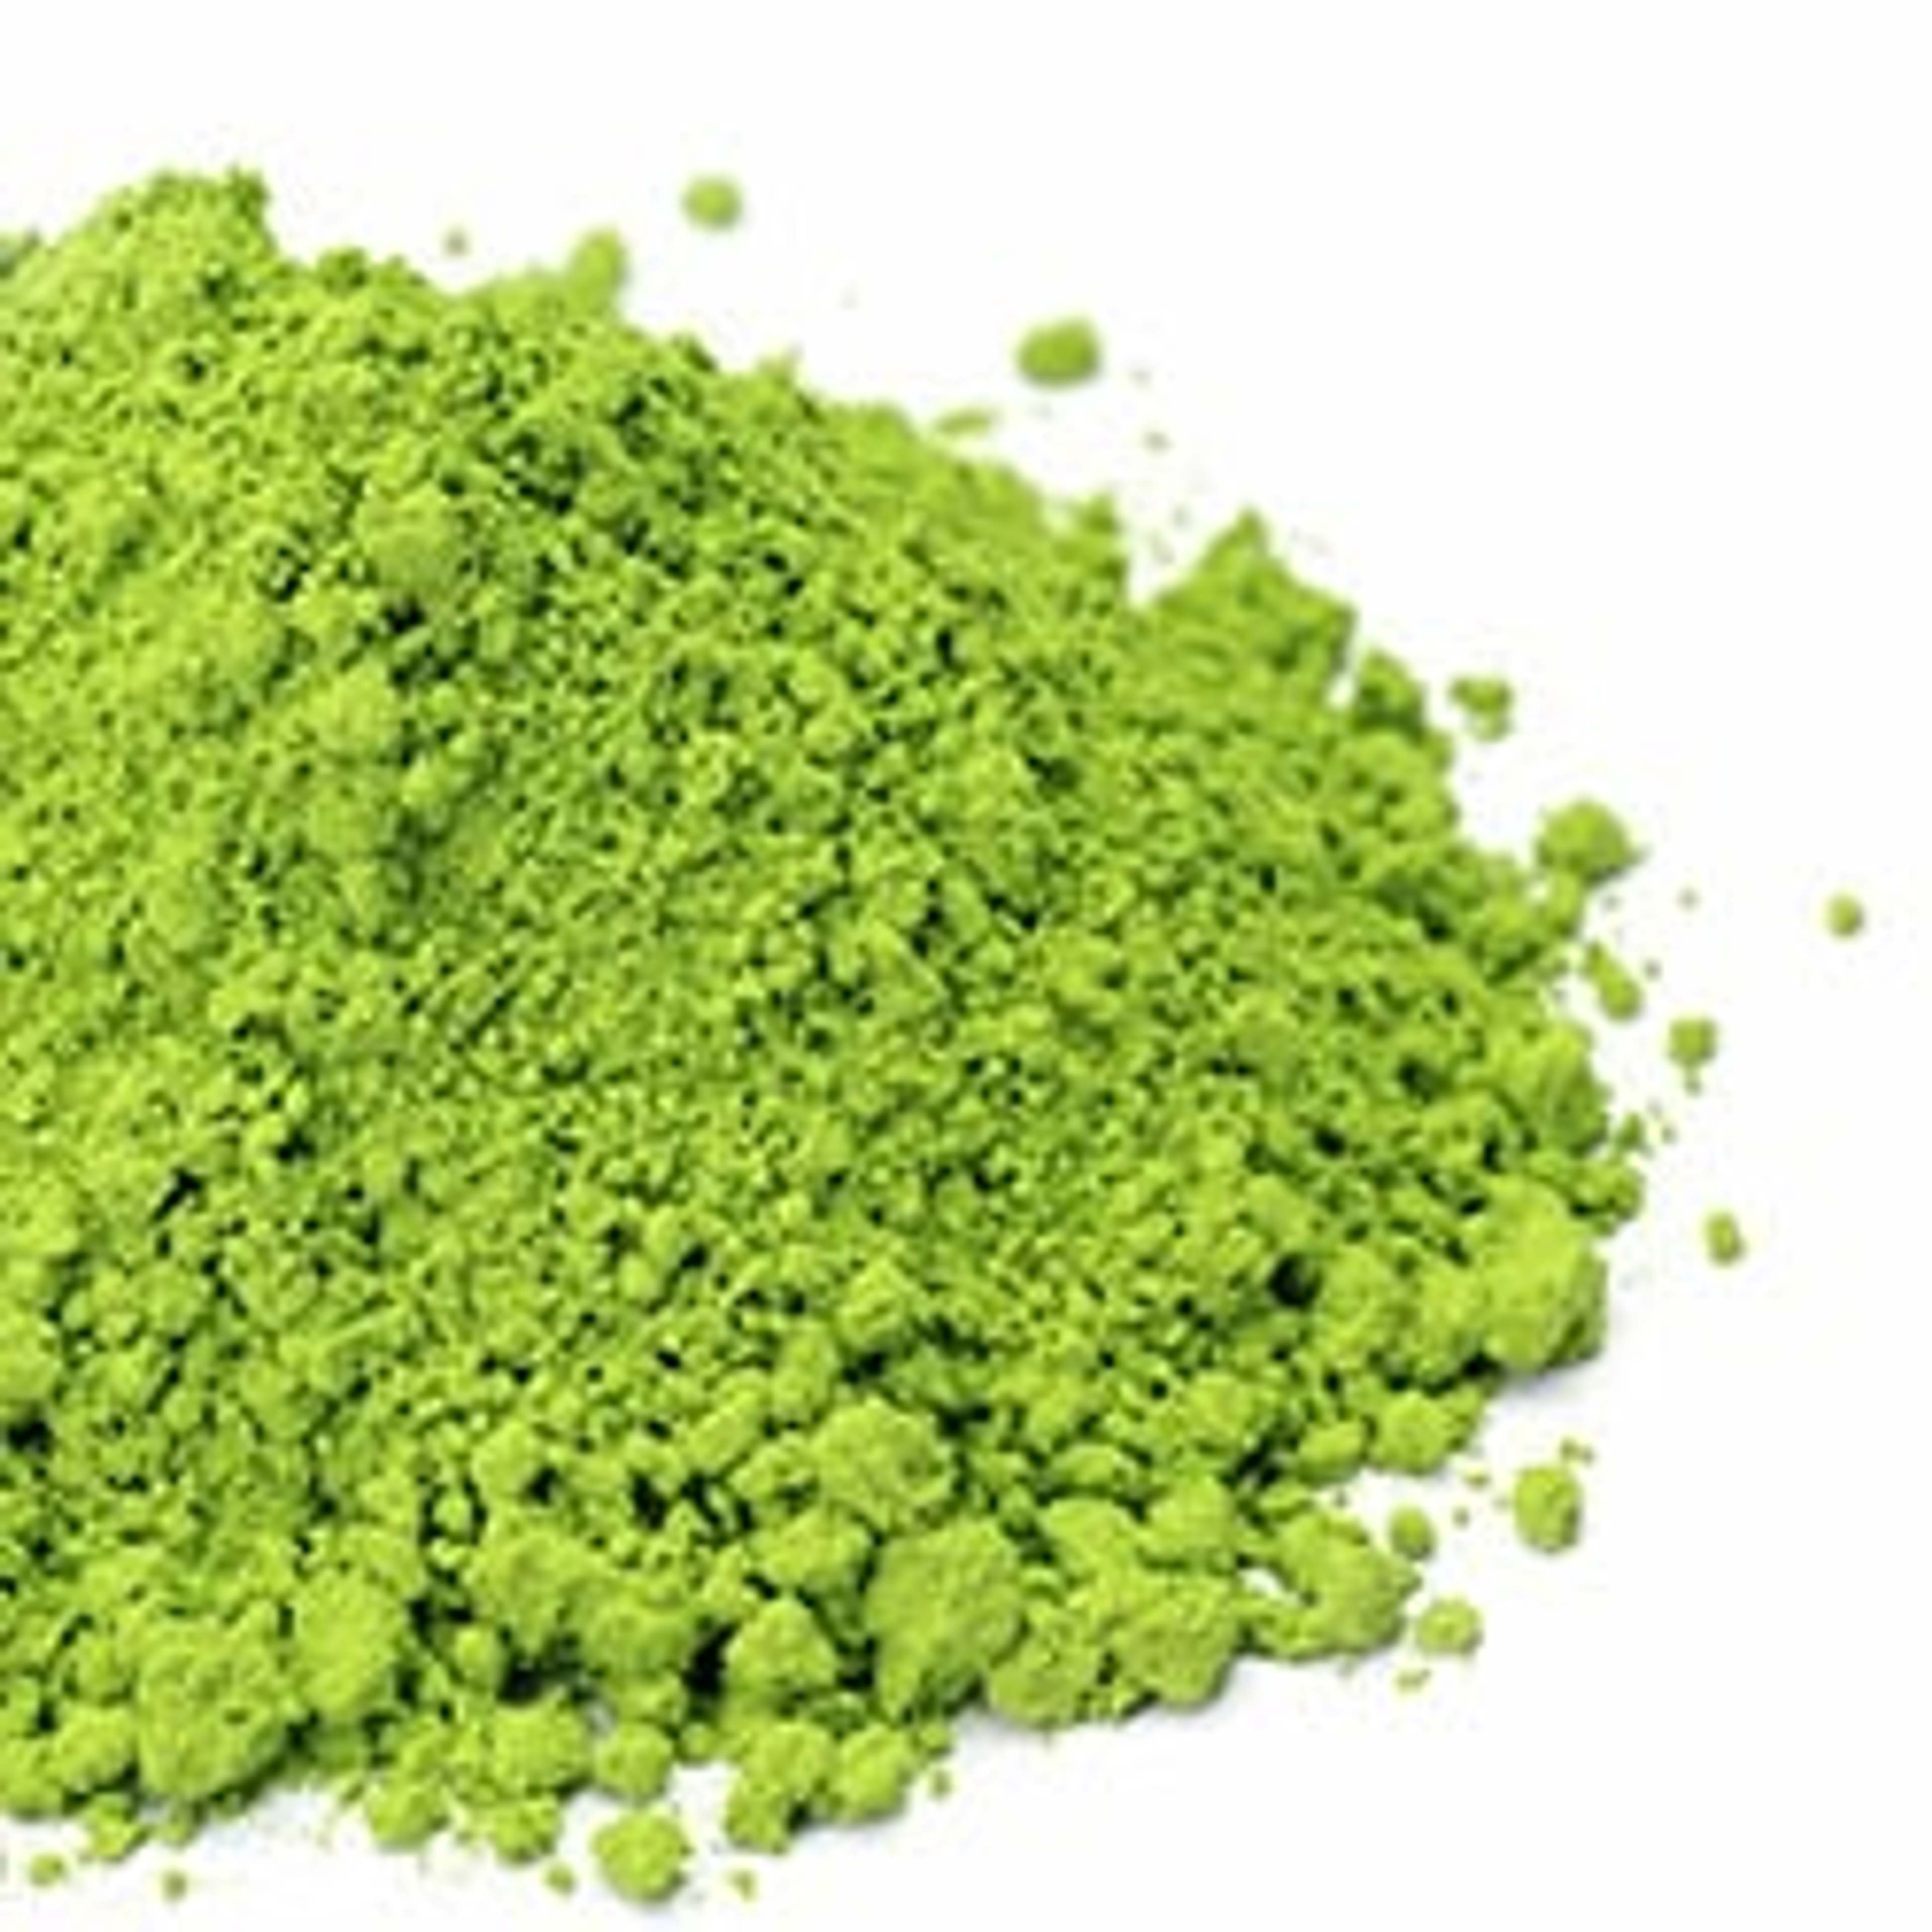 La poudre d’herbe d'orge est un produit naturel, riche en nutriments essentiels, en acides aminés, en bioflavonoïdes, en antioxydants et en chlorophylle.